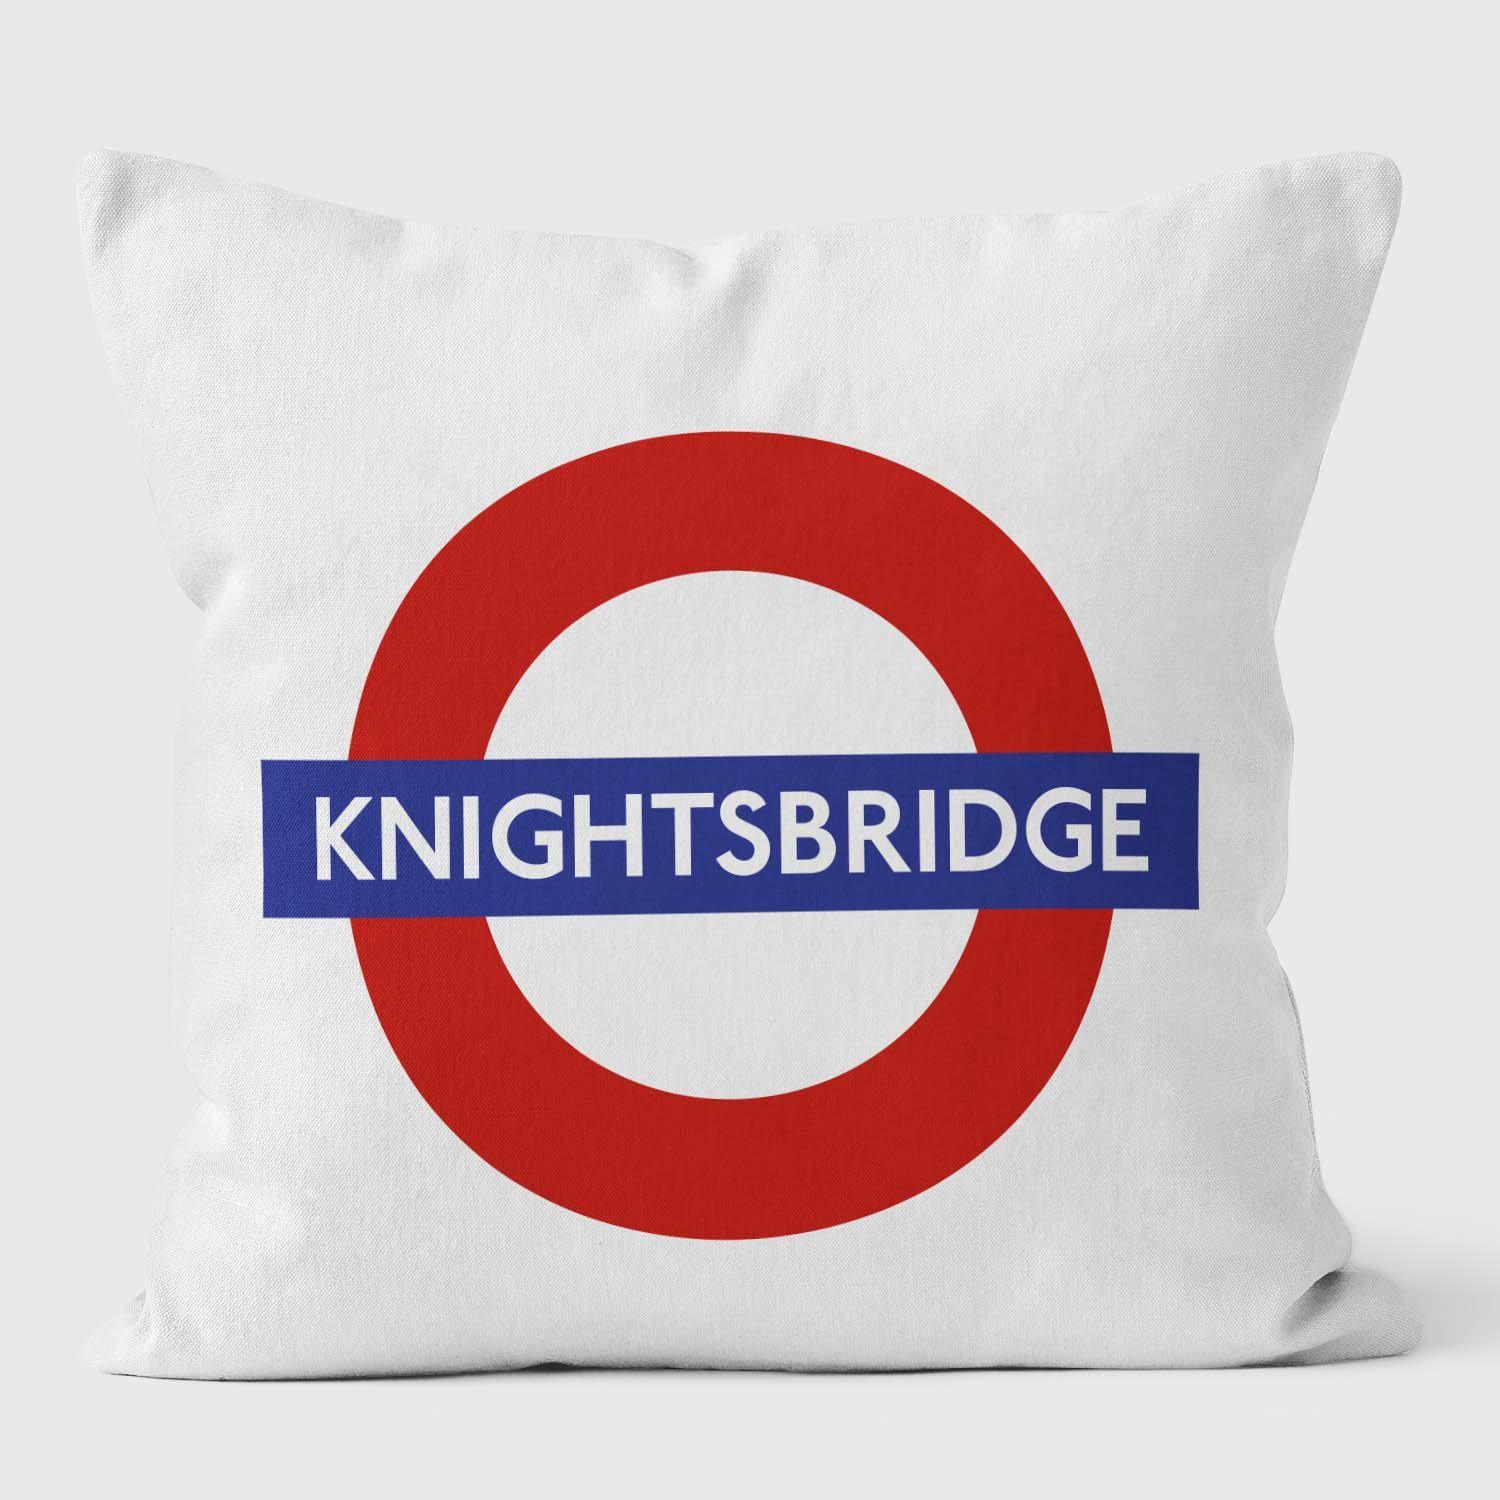 Knightsbridge London Underground Tube Station Roundel Cushion - Handmade Cushions UK - WeLoveCushions